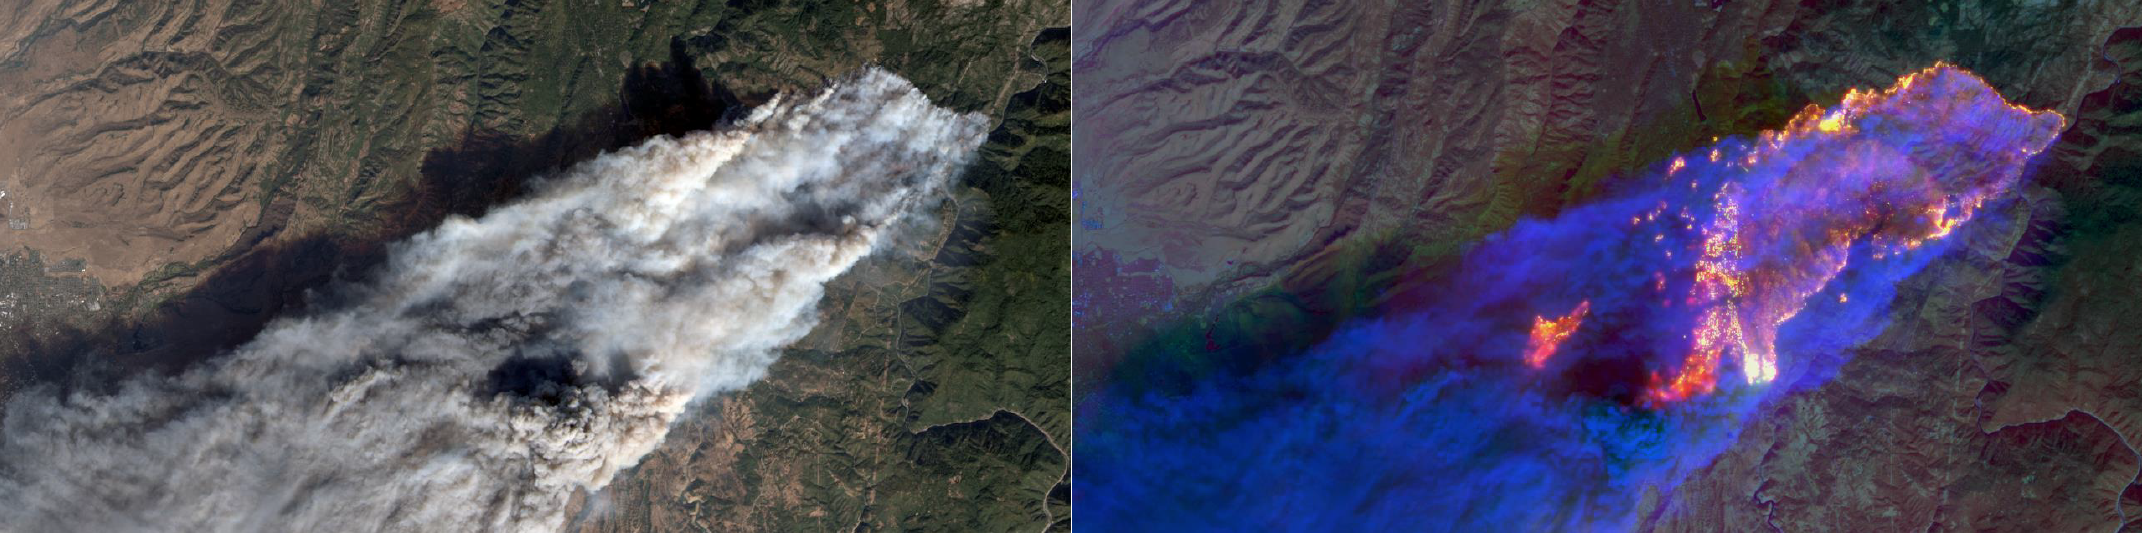 Landsat 8 images of Camp Fire